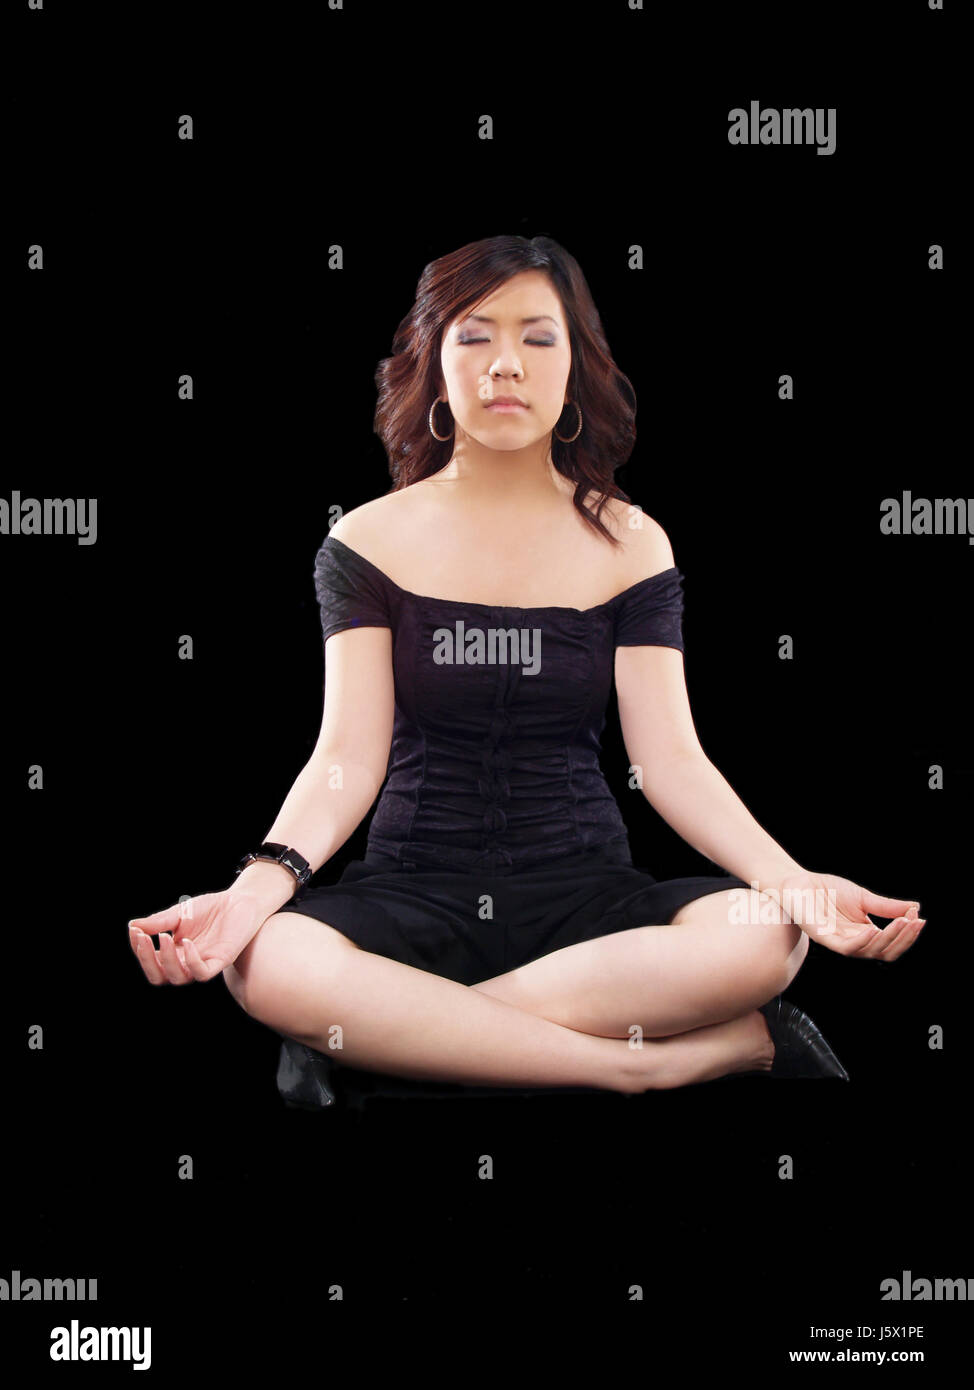 La donna la meditazione calma asian mettere seduta siedono giovani più giovane donna etnica Foto Stock